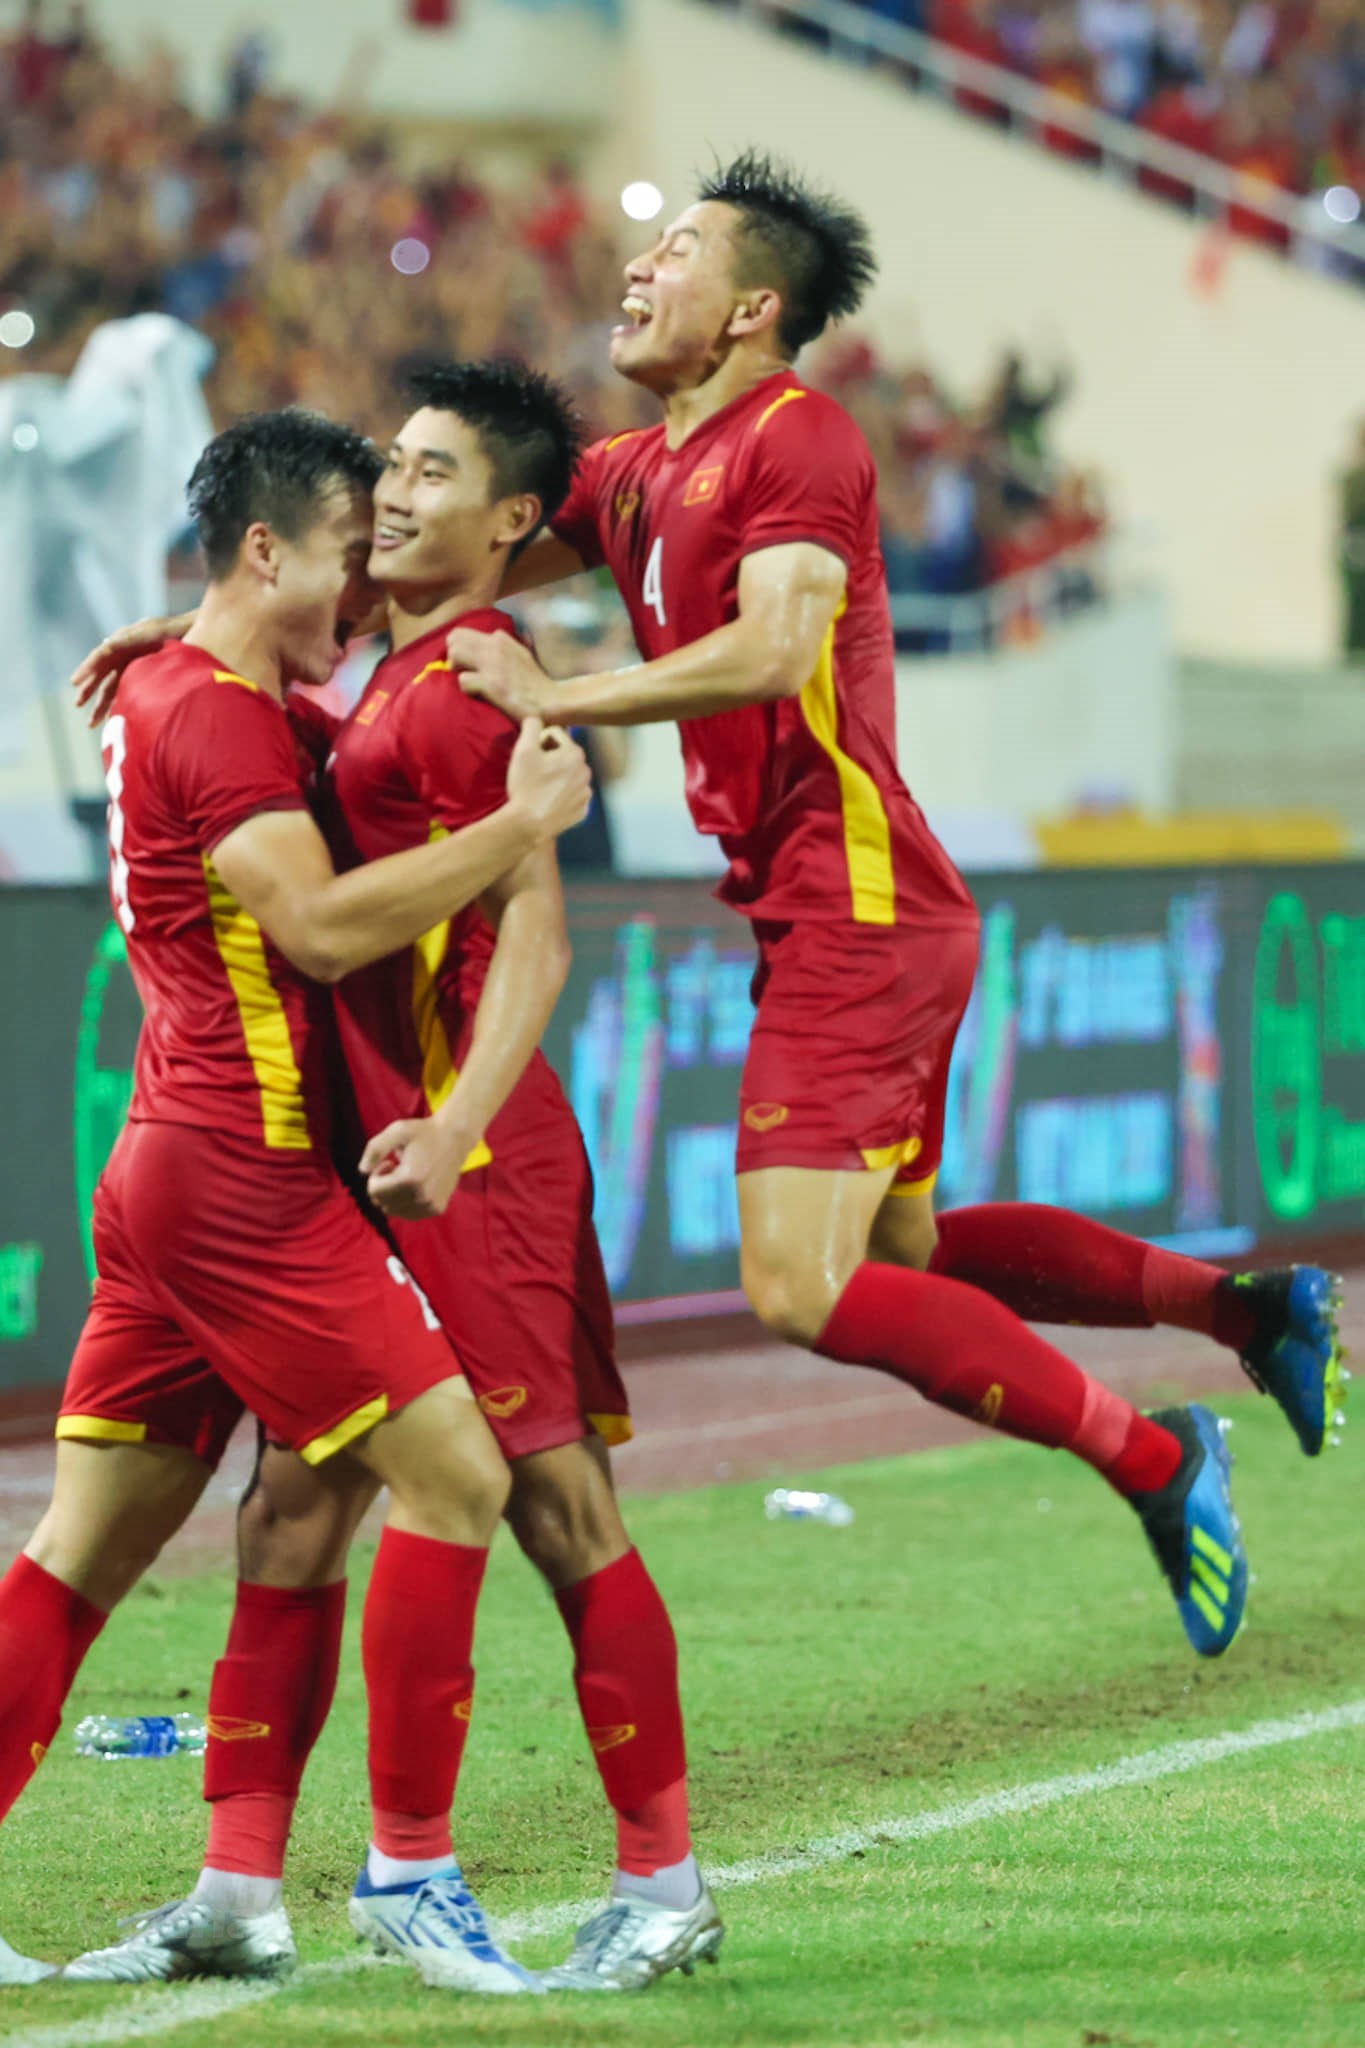 U23 Việt Nam đã ghi dấu ấn sâu đậm trong lòng người hâm mộ bóng đá nước nhà. Hãy xem những hình ảnh đặc biệt về đội tuyển U23 Việt Nam để tự hào về sự nỗ lực và tinh thần đối đầu cùng các đối thủ mạnh!